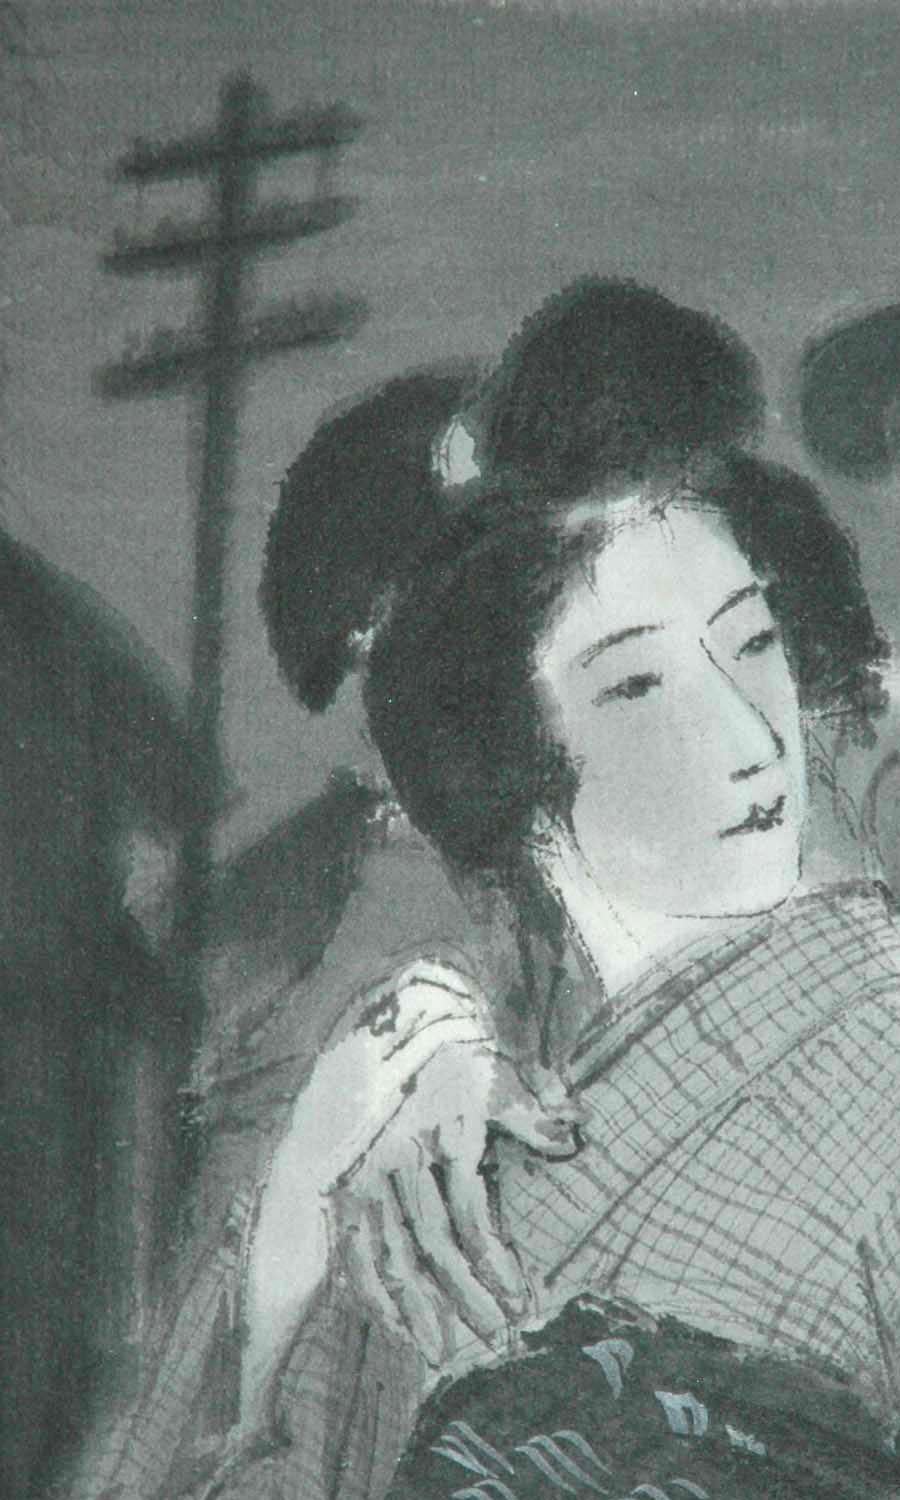 Sumi-Tuschezeichnung, um 1928
Signiert in der rechten unteren Ecke (siehe Detail)
Originalillustration für den Roman 